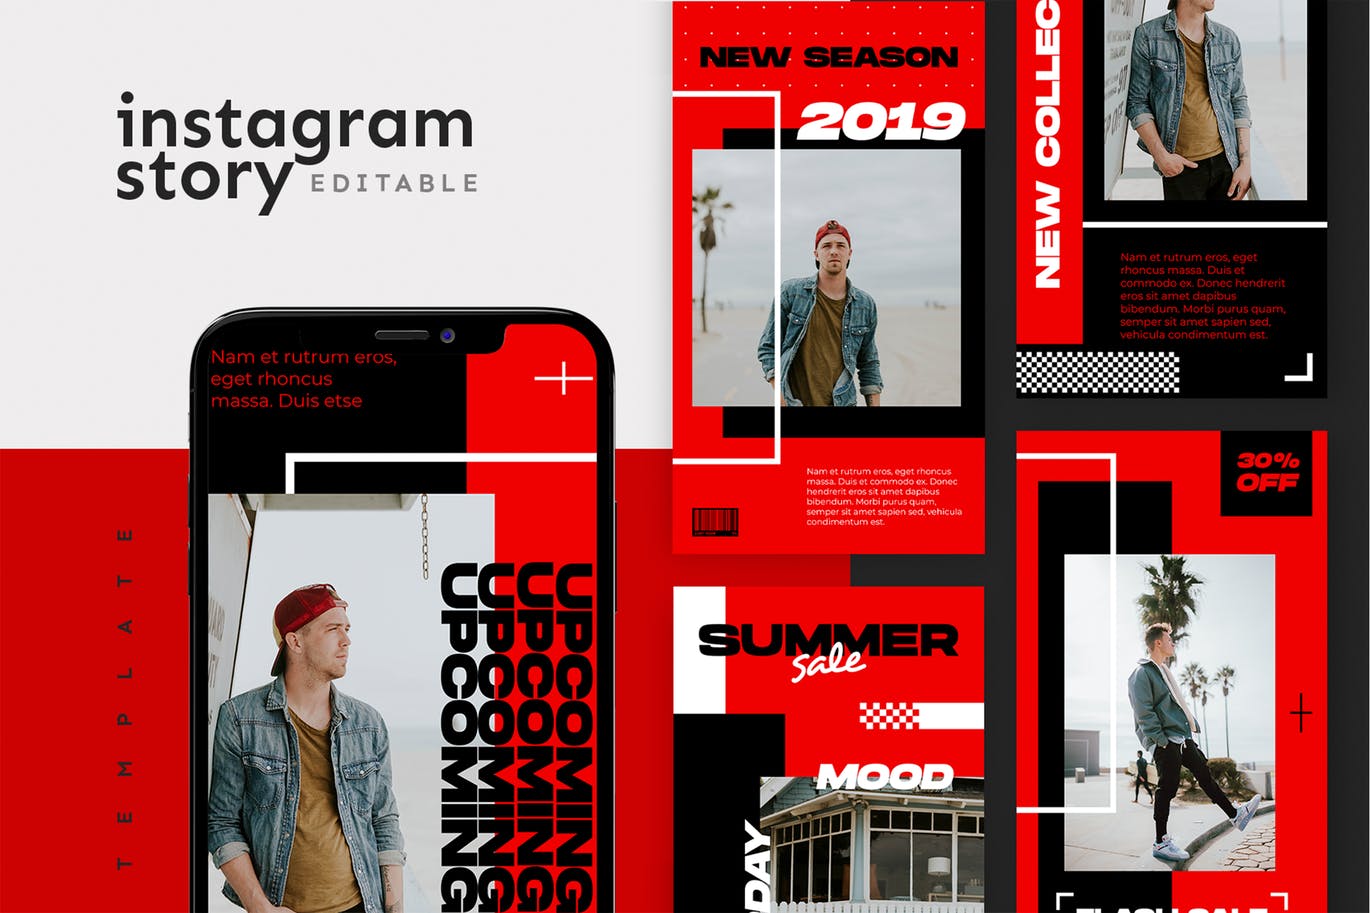 红黑配色风格Instagram社交品牌故事设计素材包 Instagram Story Template插图